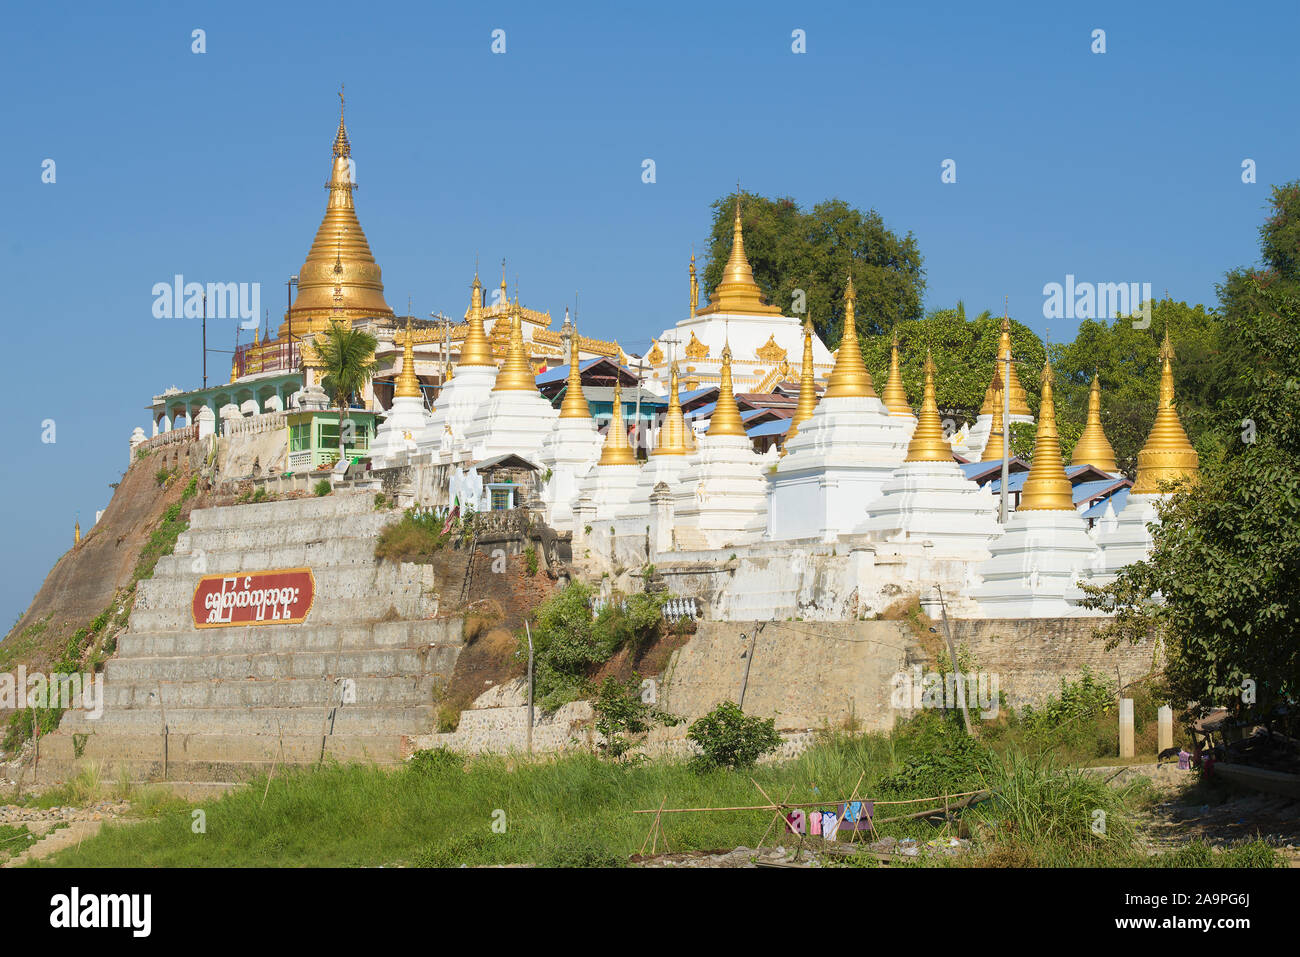 AMARAPURA, MYANMAR - Dezember 20, 2016: Buddhistischer Tempel Shwe Kyat Yat Pagode an einem sonnigen Tag Stockfoto